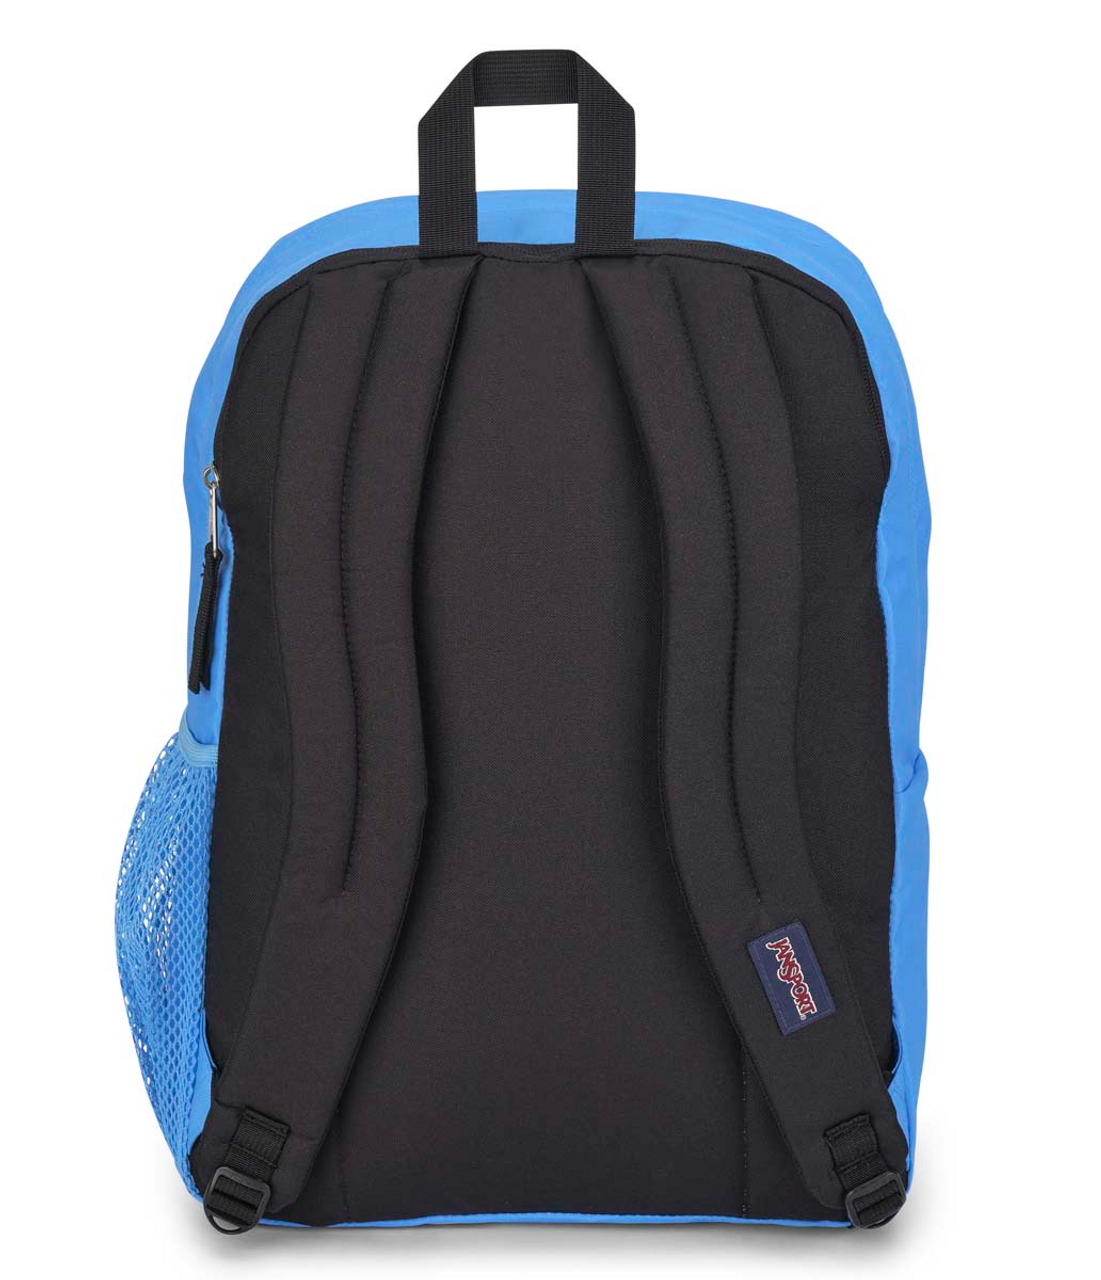 Big Student Backpack - Blue Outdoor Ramsey Neon 